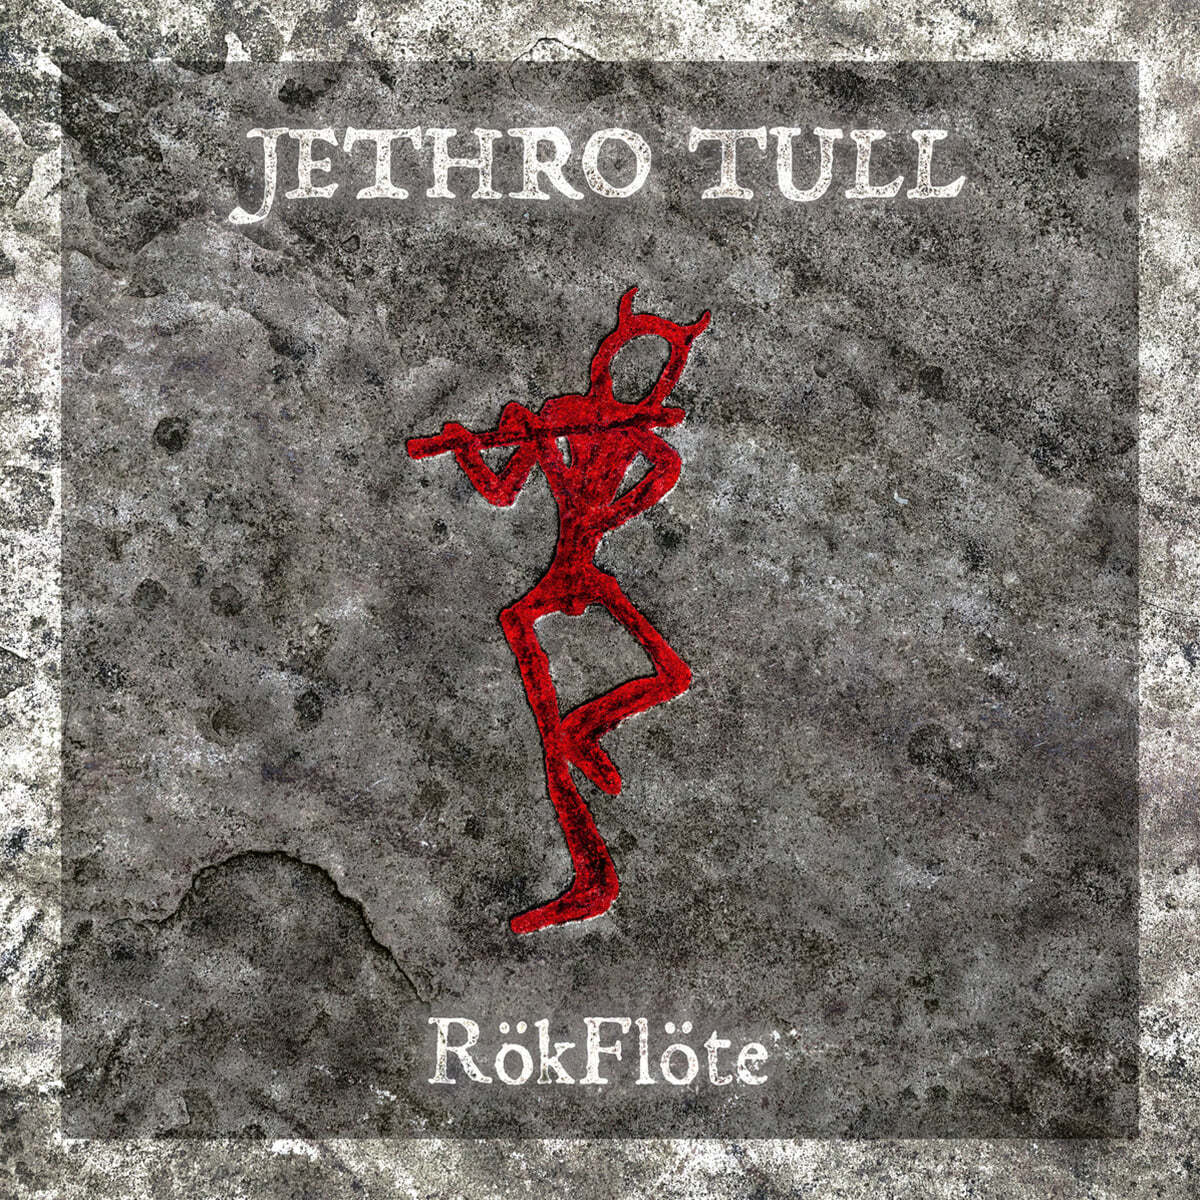 Jethro Tull (제쓰로 툴) - RokFlote [LP]